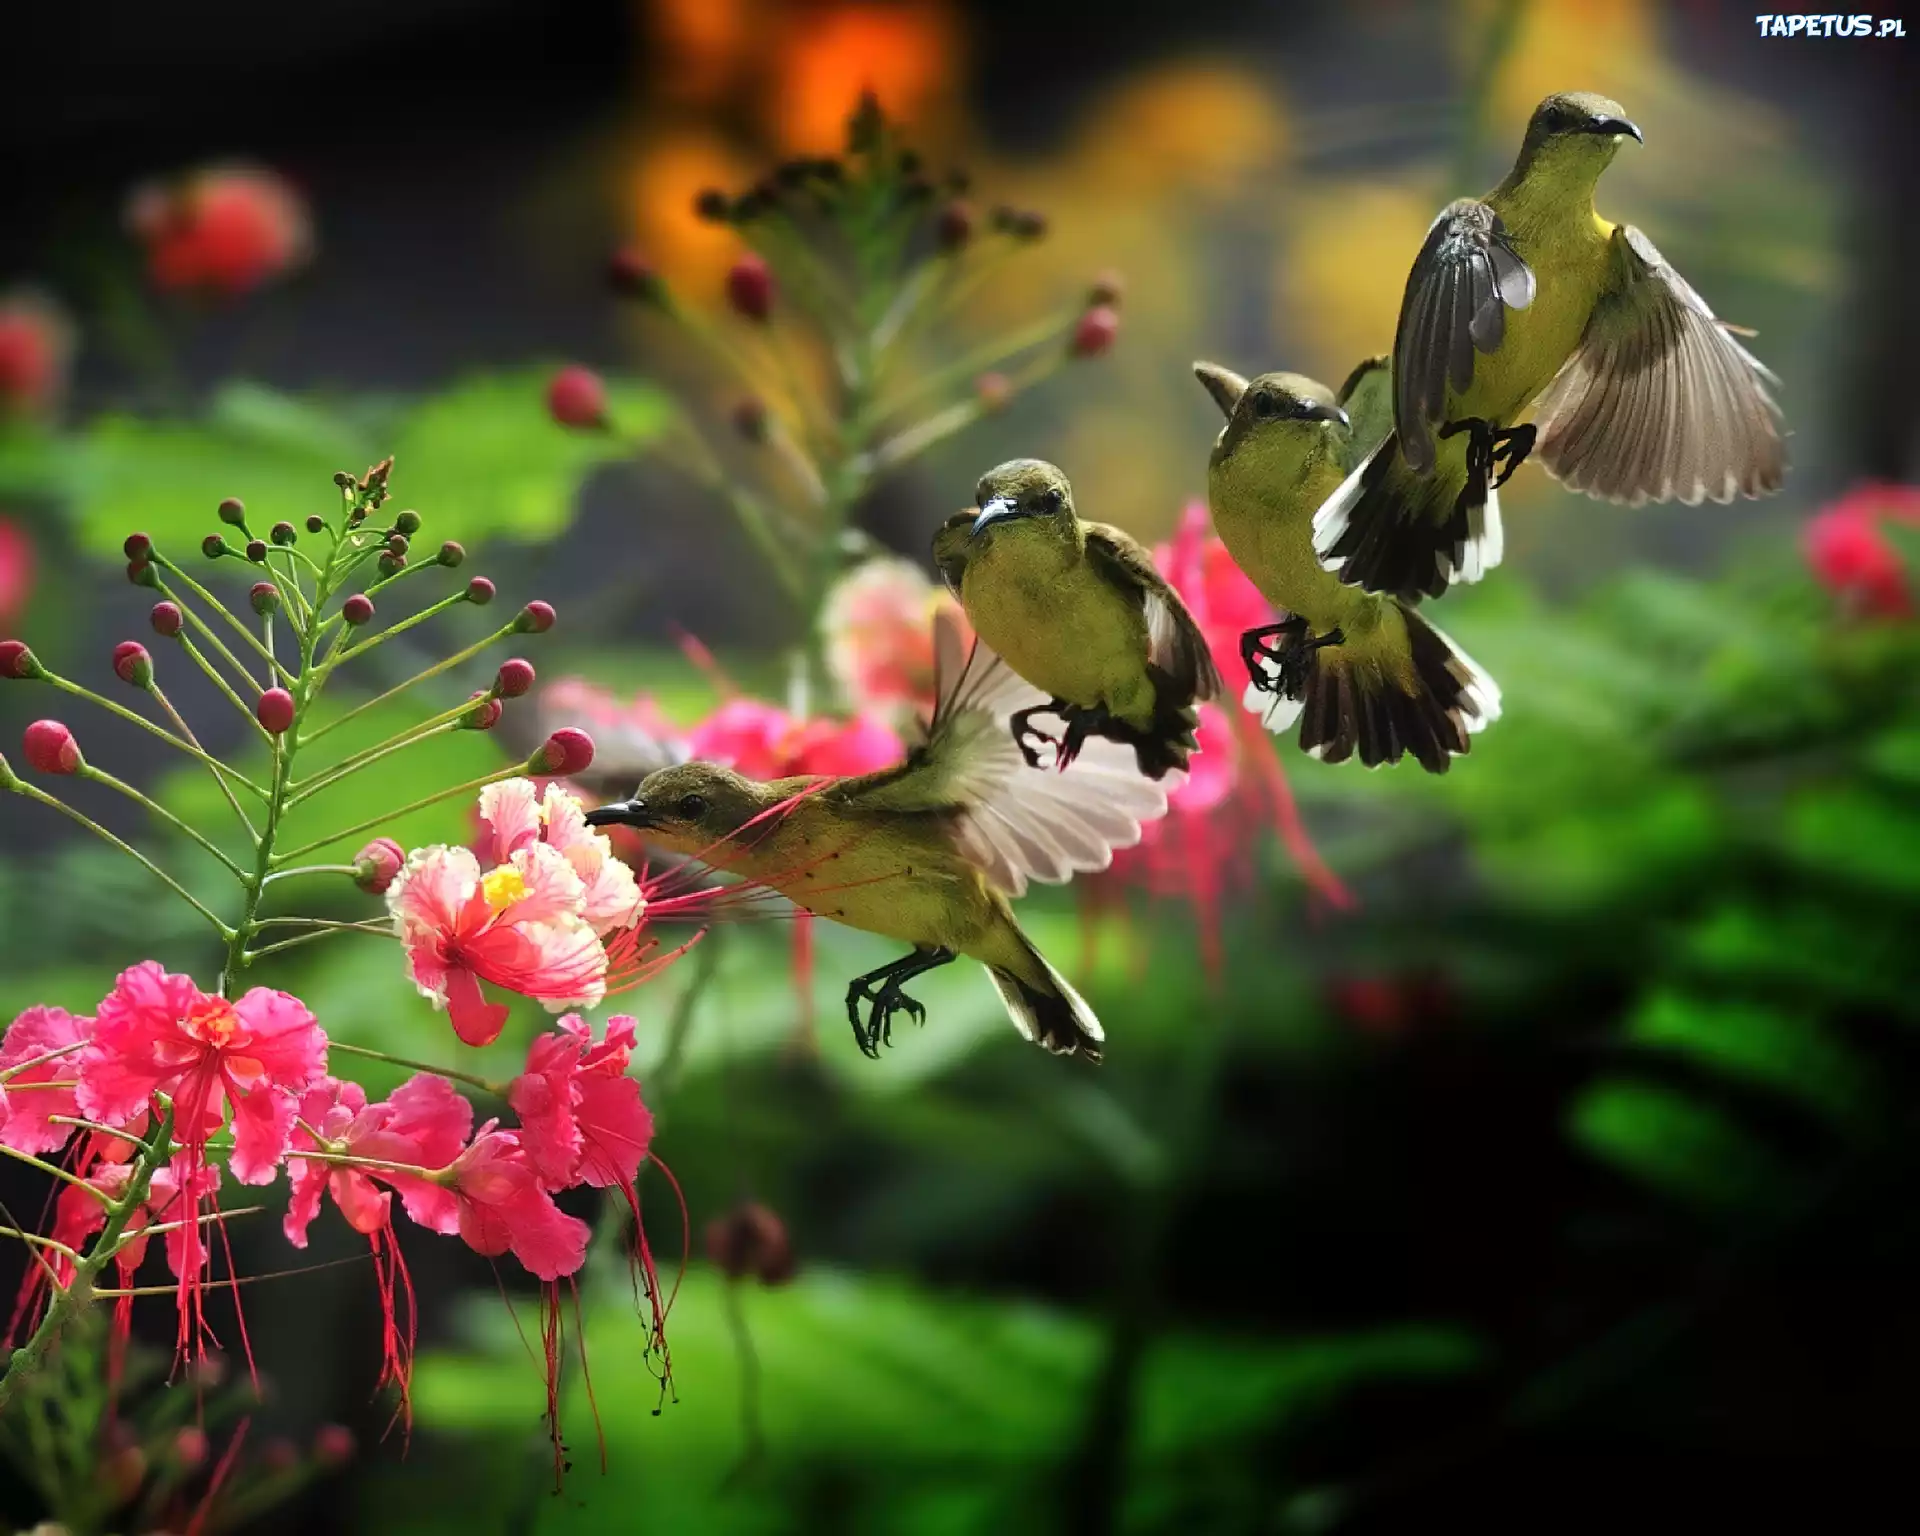 Красивая природа с птицами. Райские птицы. Красивые птицы. Красивые цветы и птицы. Красивая природа с птичками.